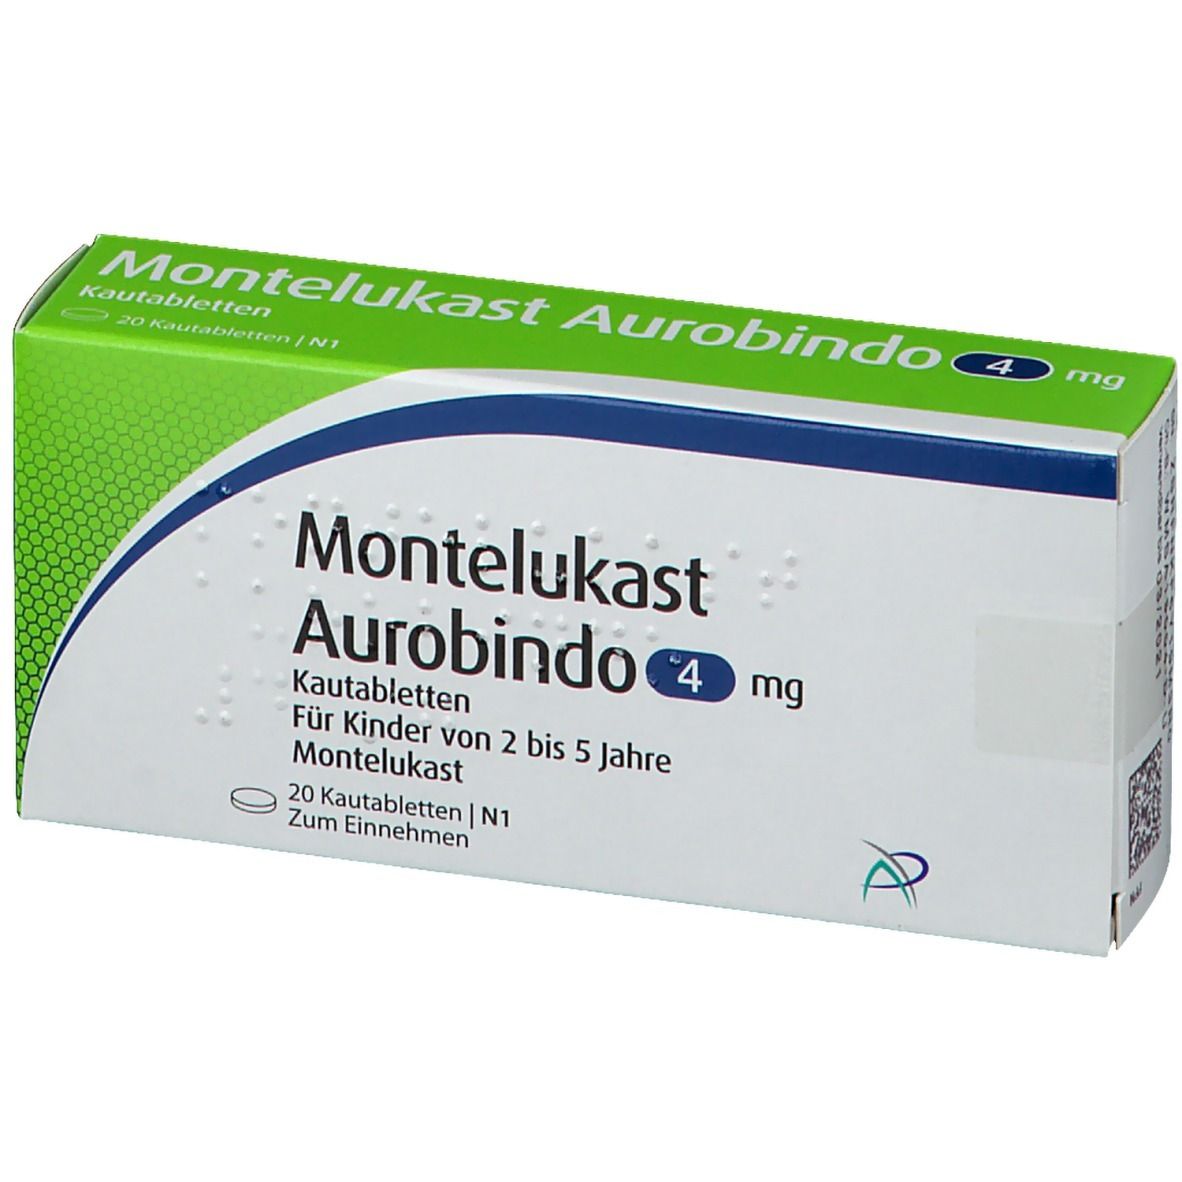 Montelukast Aurobindo 4 mg